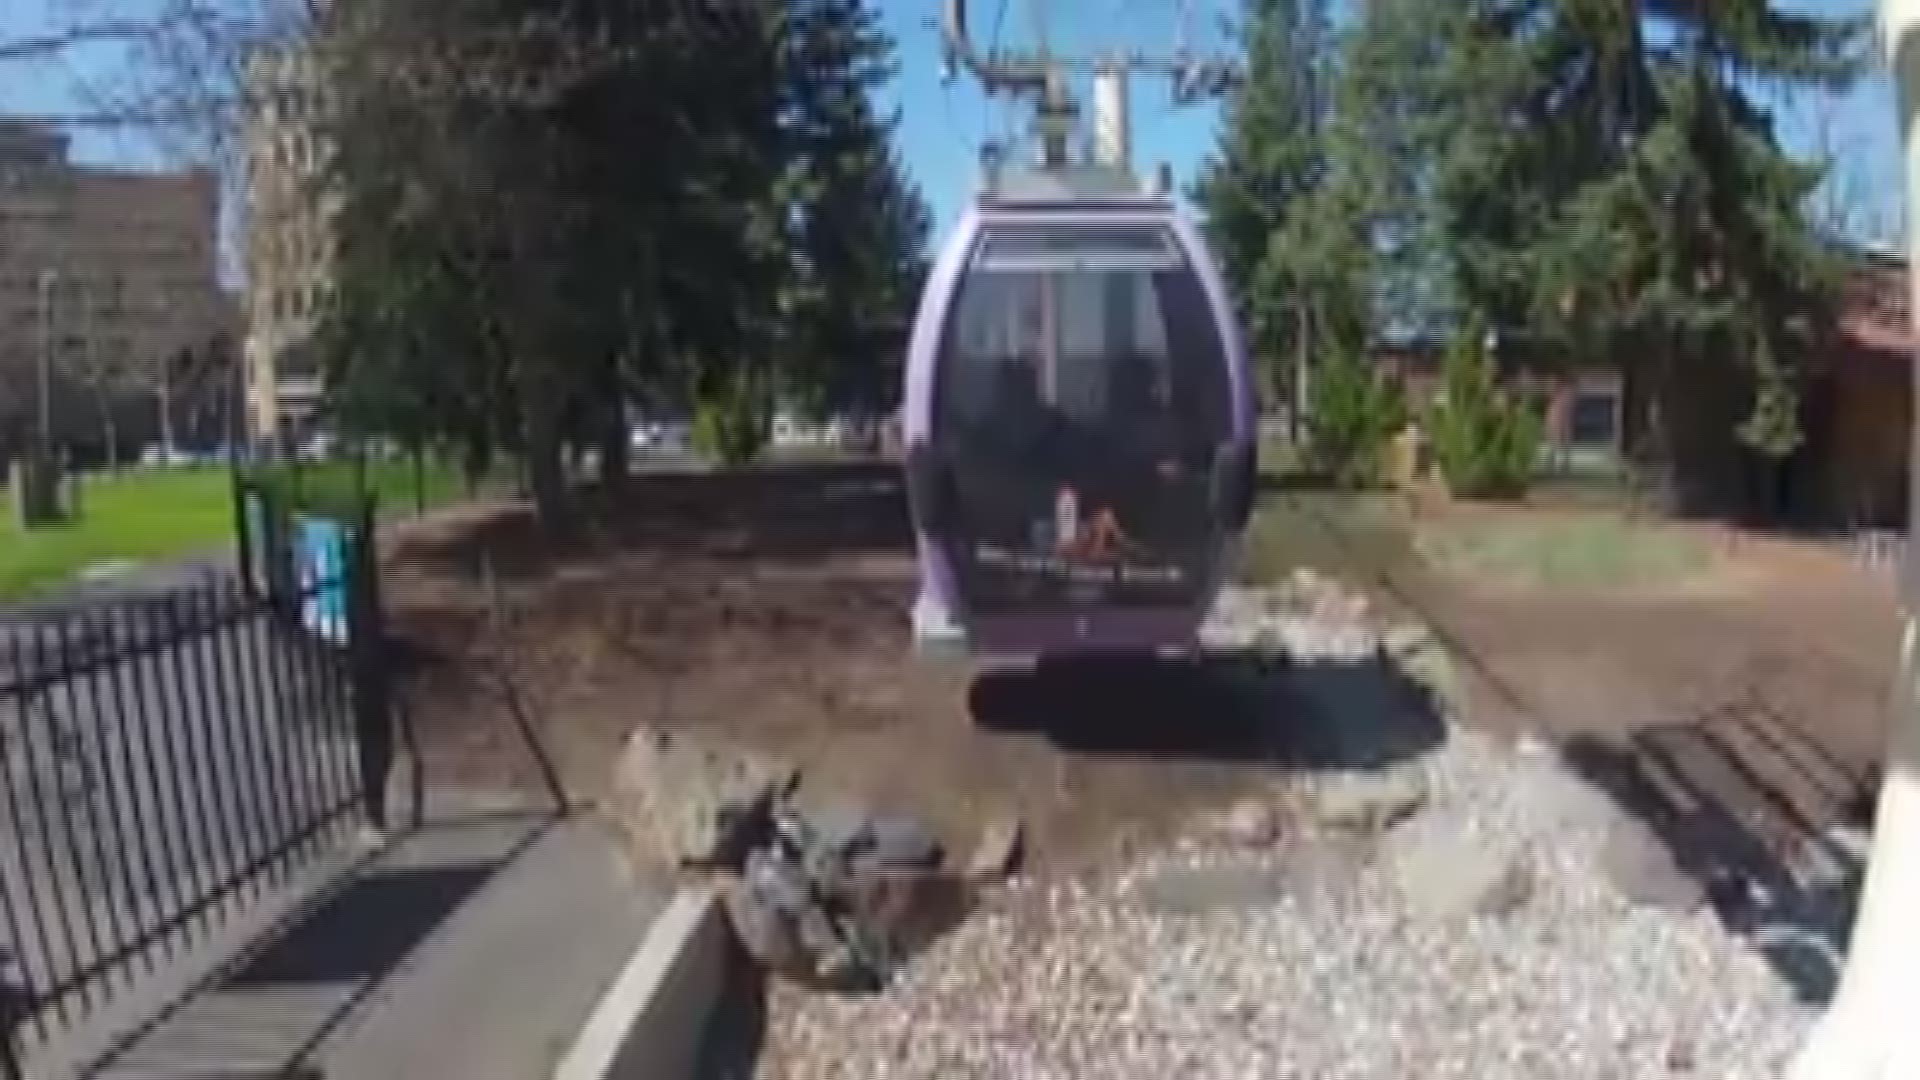 Spokane's gondola ride to return to service in Spring of 2018